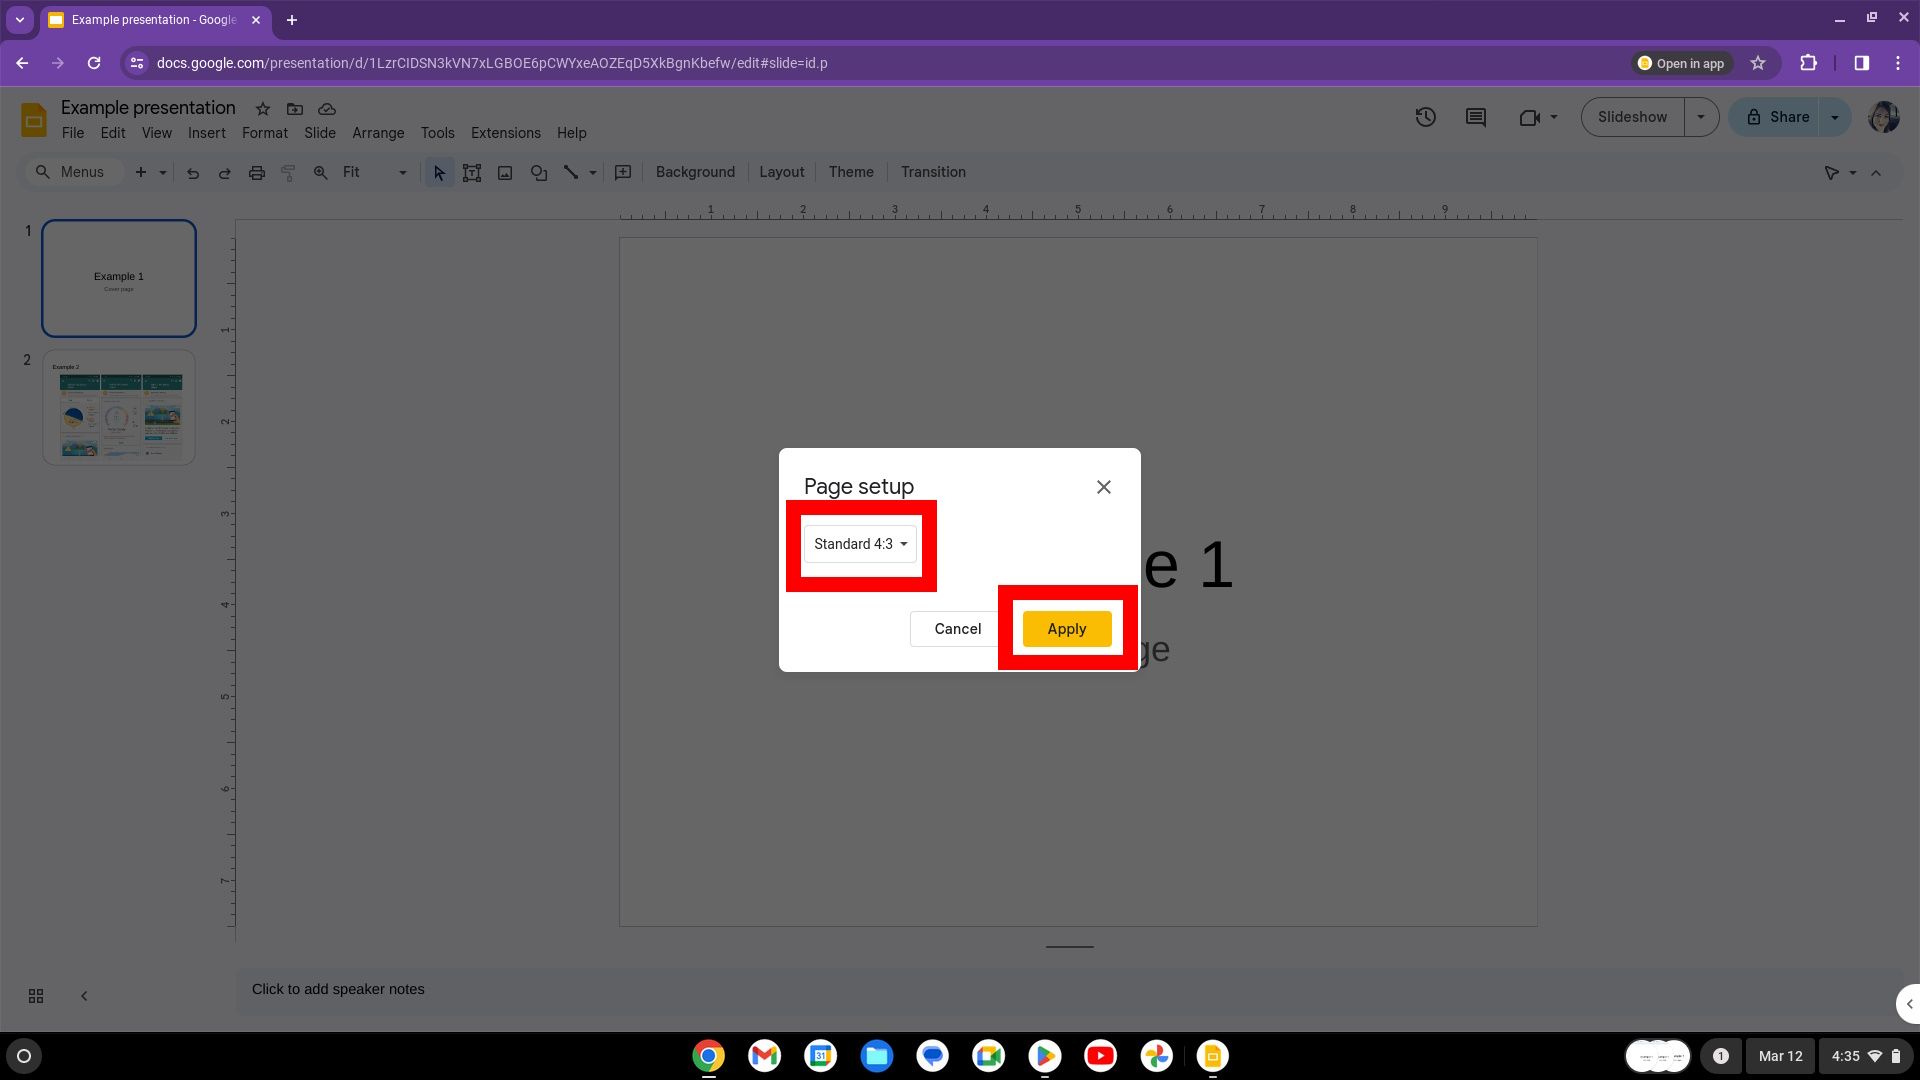 contorno de caixa vermelha sobre o menu suspenso de proporção de aspecto e outro contorno de caixa vermelha sobre o botão laranja de aplicação na configuração da página ao usar um Chromebook